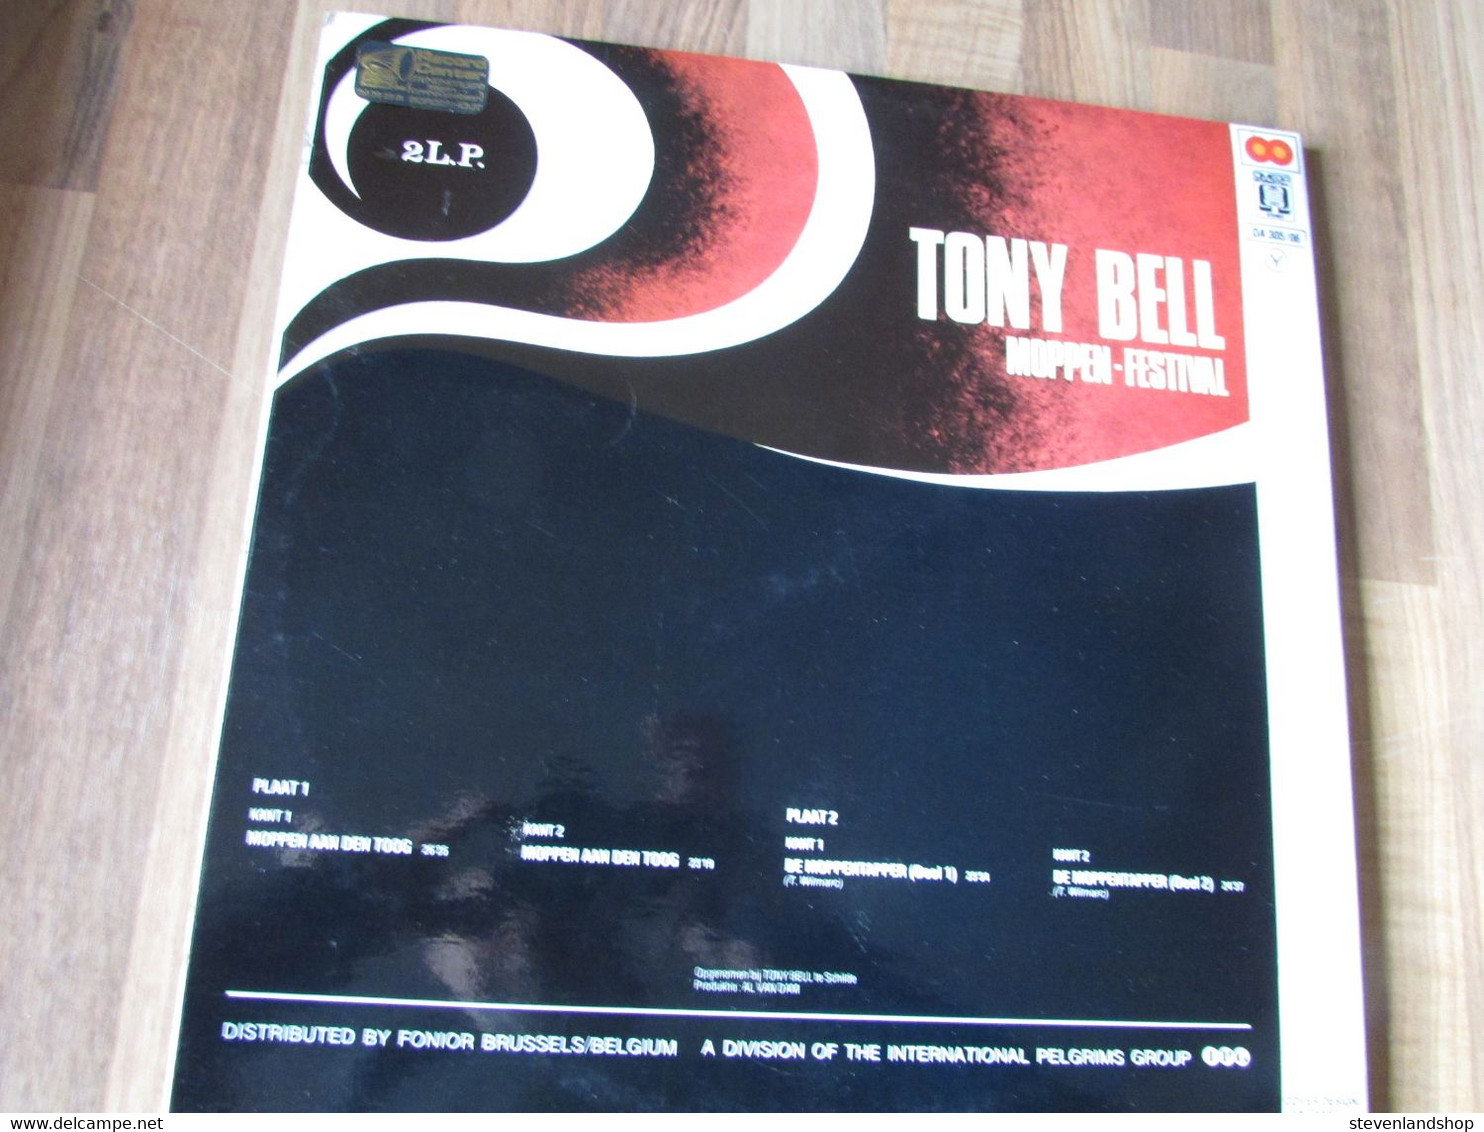 TONY BELL, Moppen Festival 2 LP'S - Humor, Cabaret